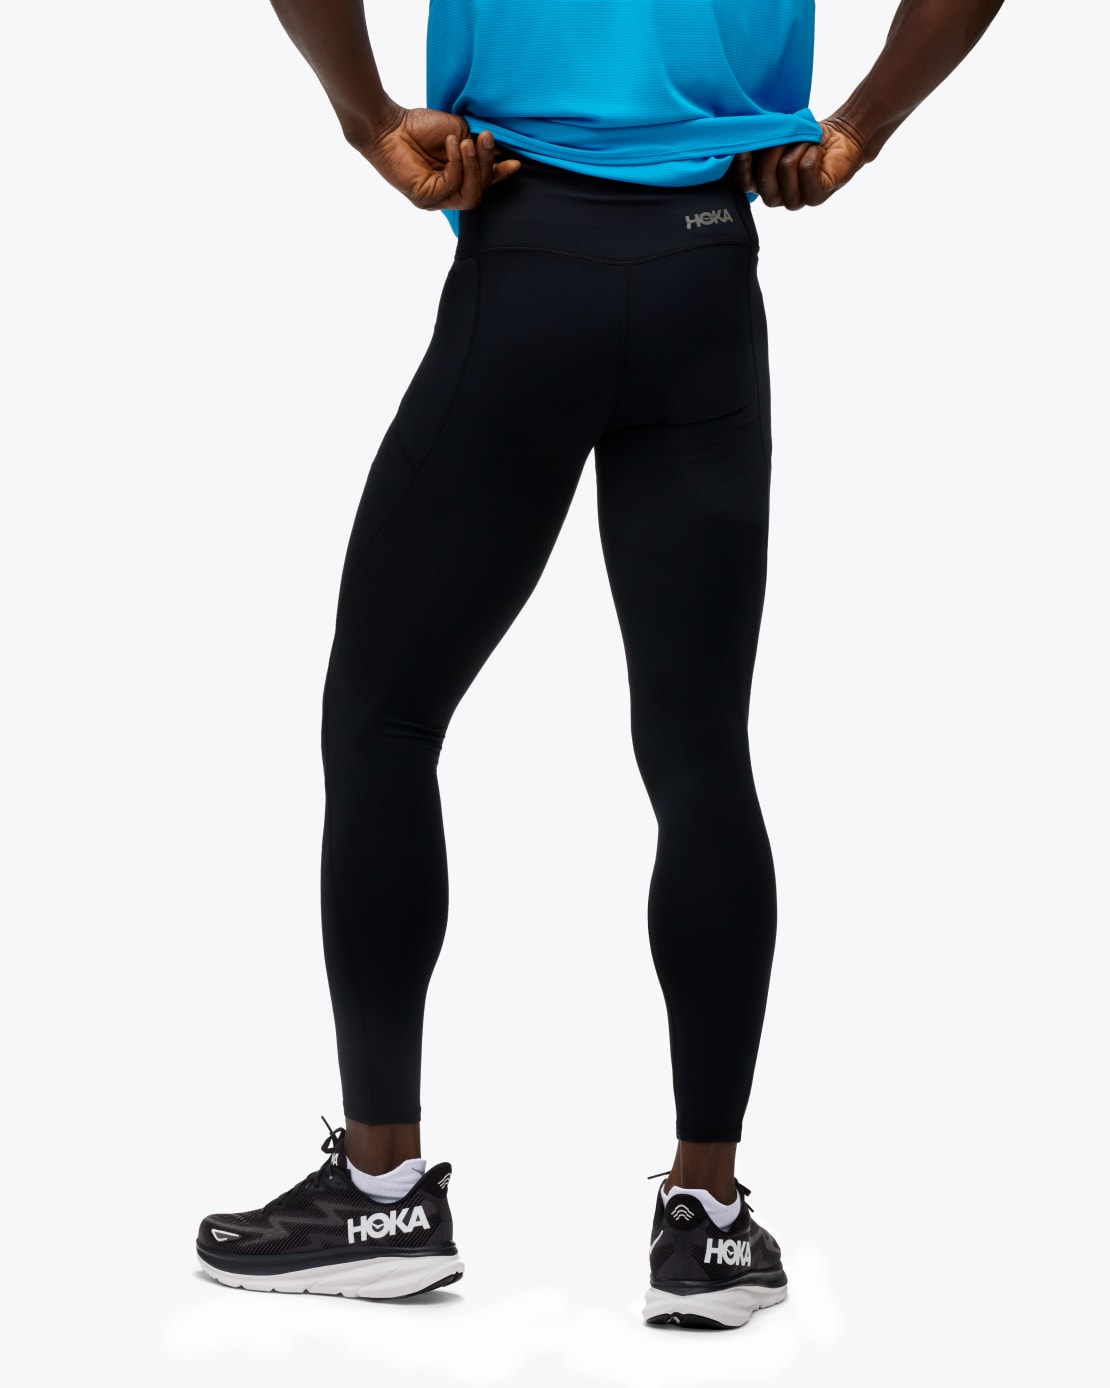 Stability Super Soft Active Legging - Black, Fashion Nova, Nova Sport